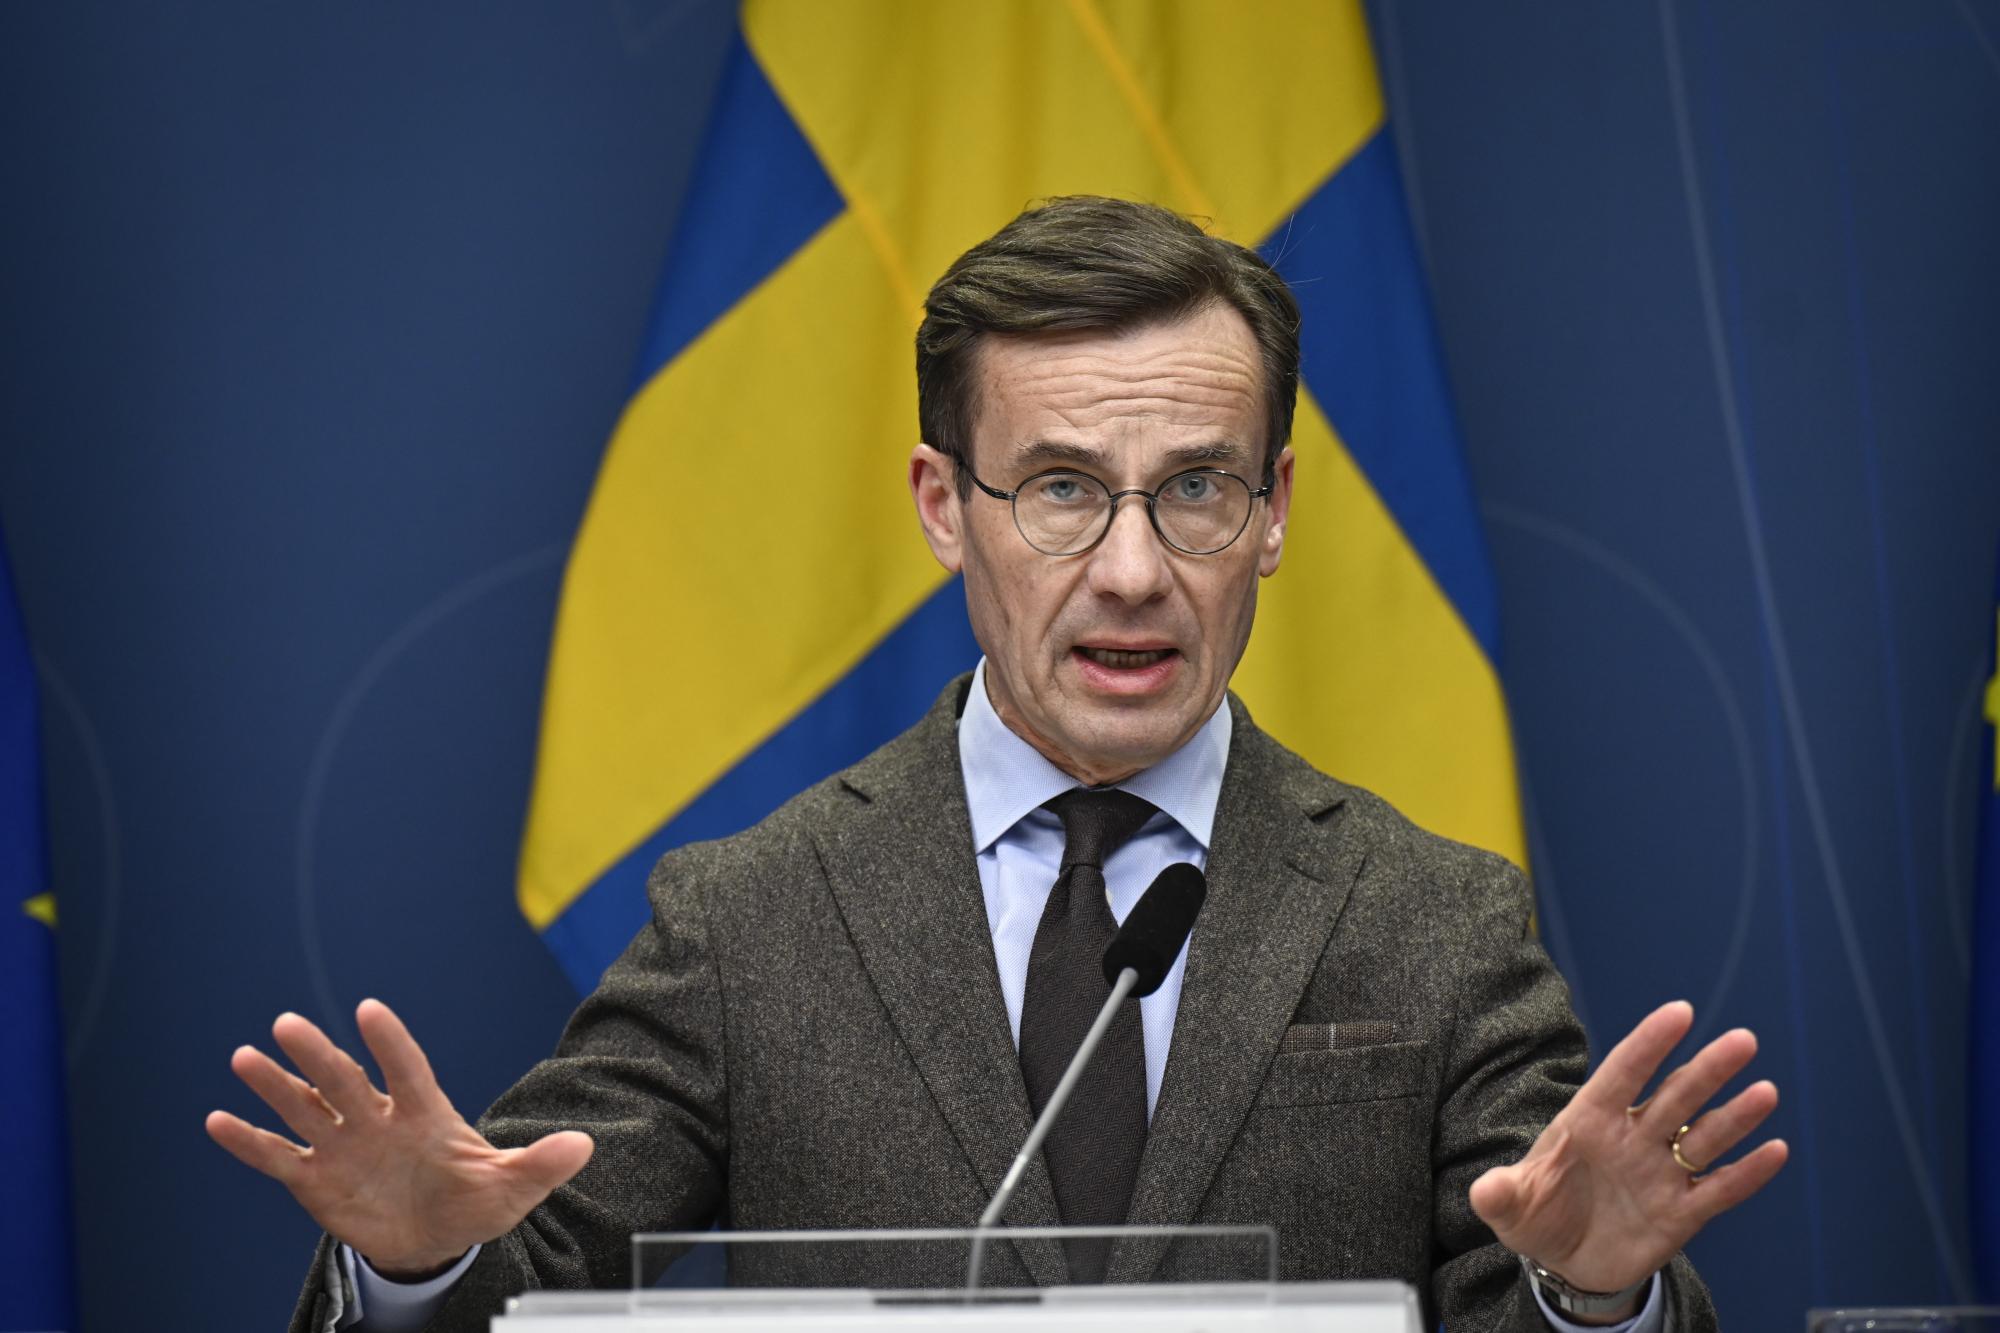 Sweden's NATO membership bid news confrence in Stokcholm